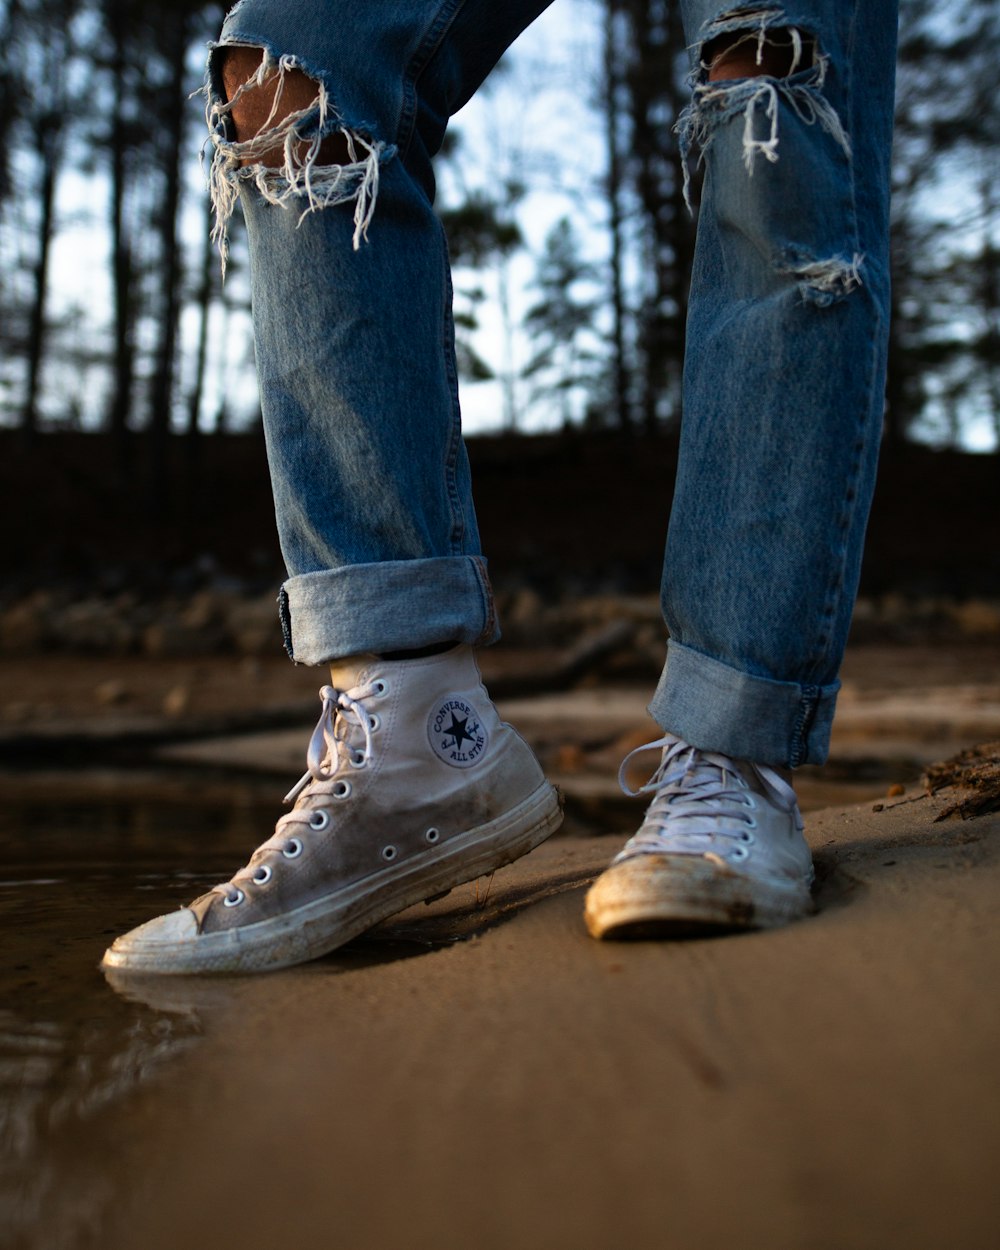 Foto Persona con vaqueros azules hechos jirones y zapatillas Converse blancas – Zapato gratis en Unsplash